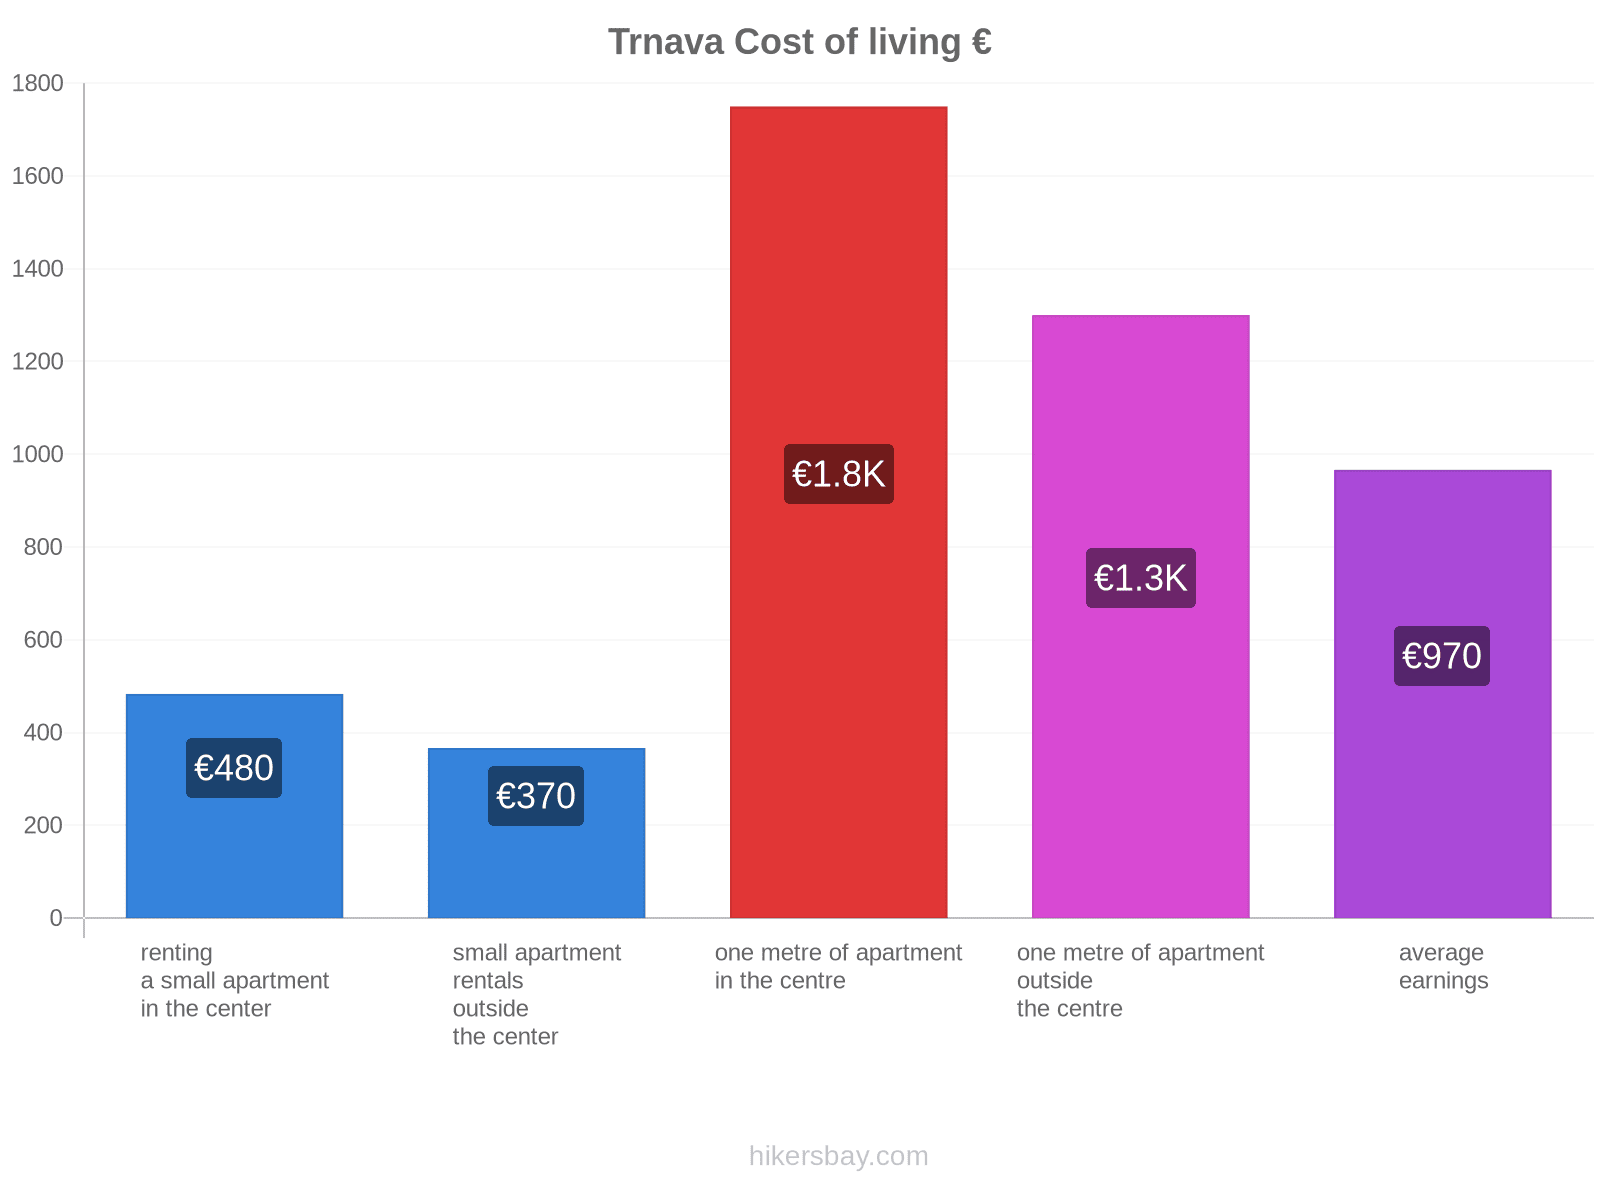 Trnava cost of living hikersbay.com